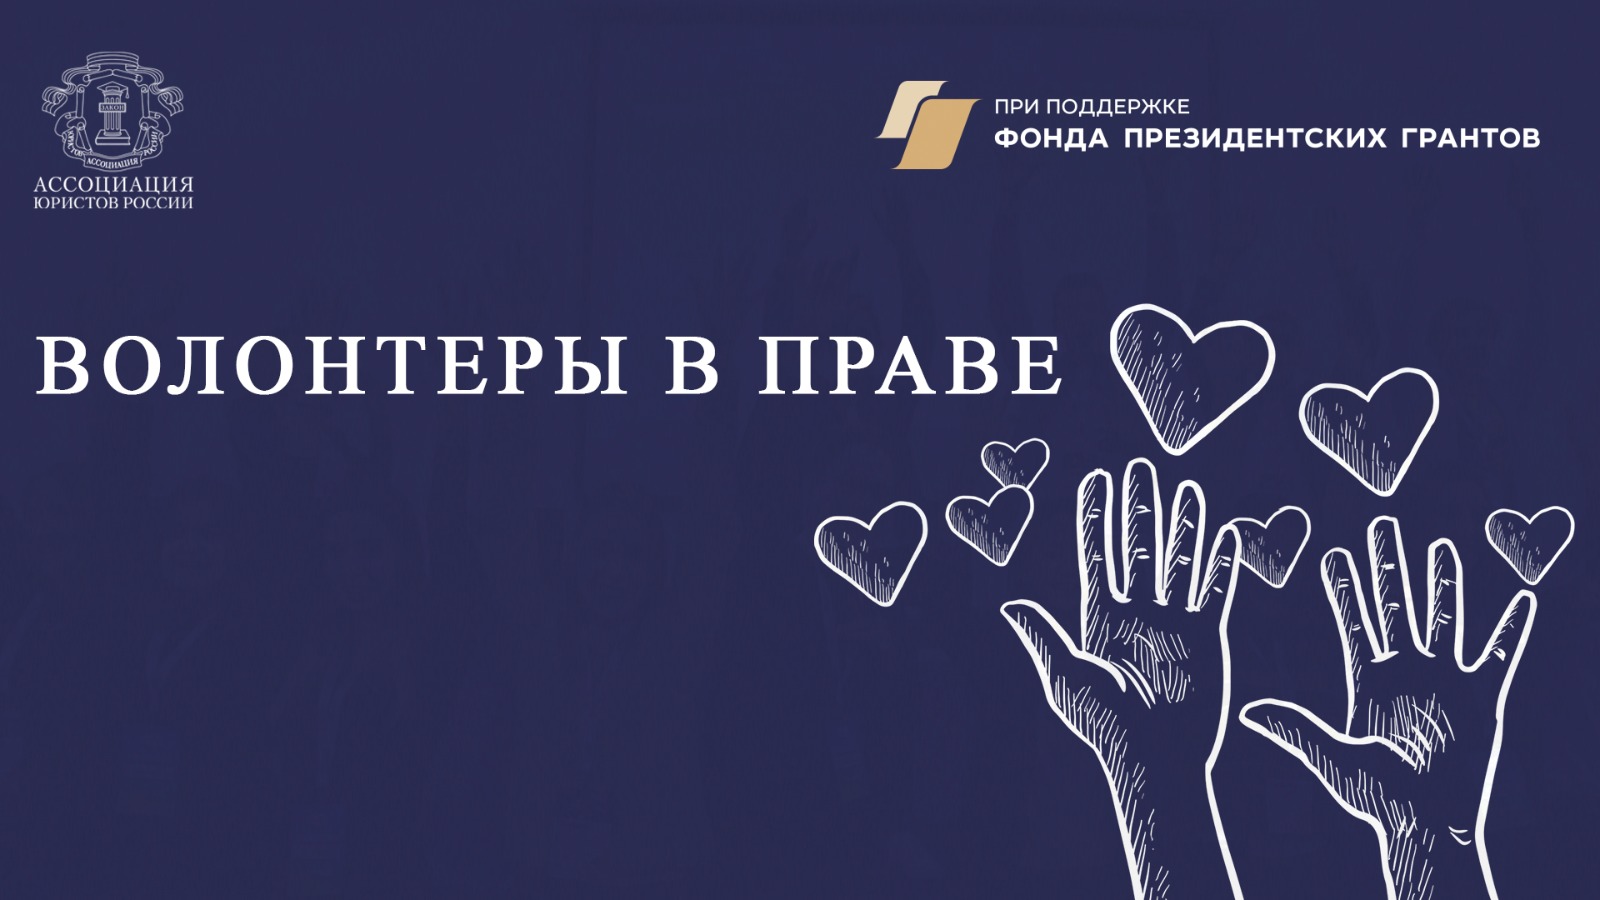 Ассоциация юристов России подготовит волонтеров для расширения системы оказания бесплатной юридической помощи